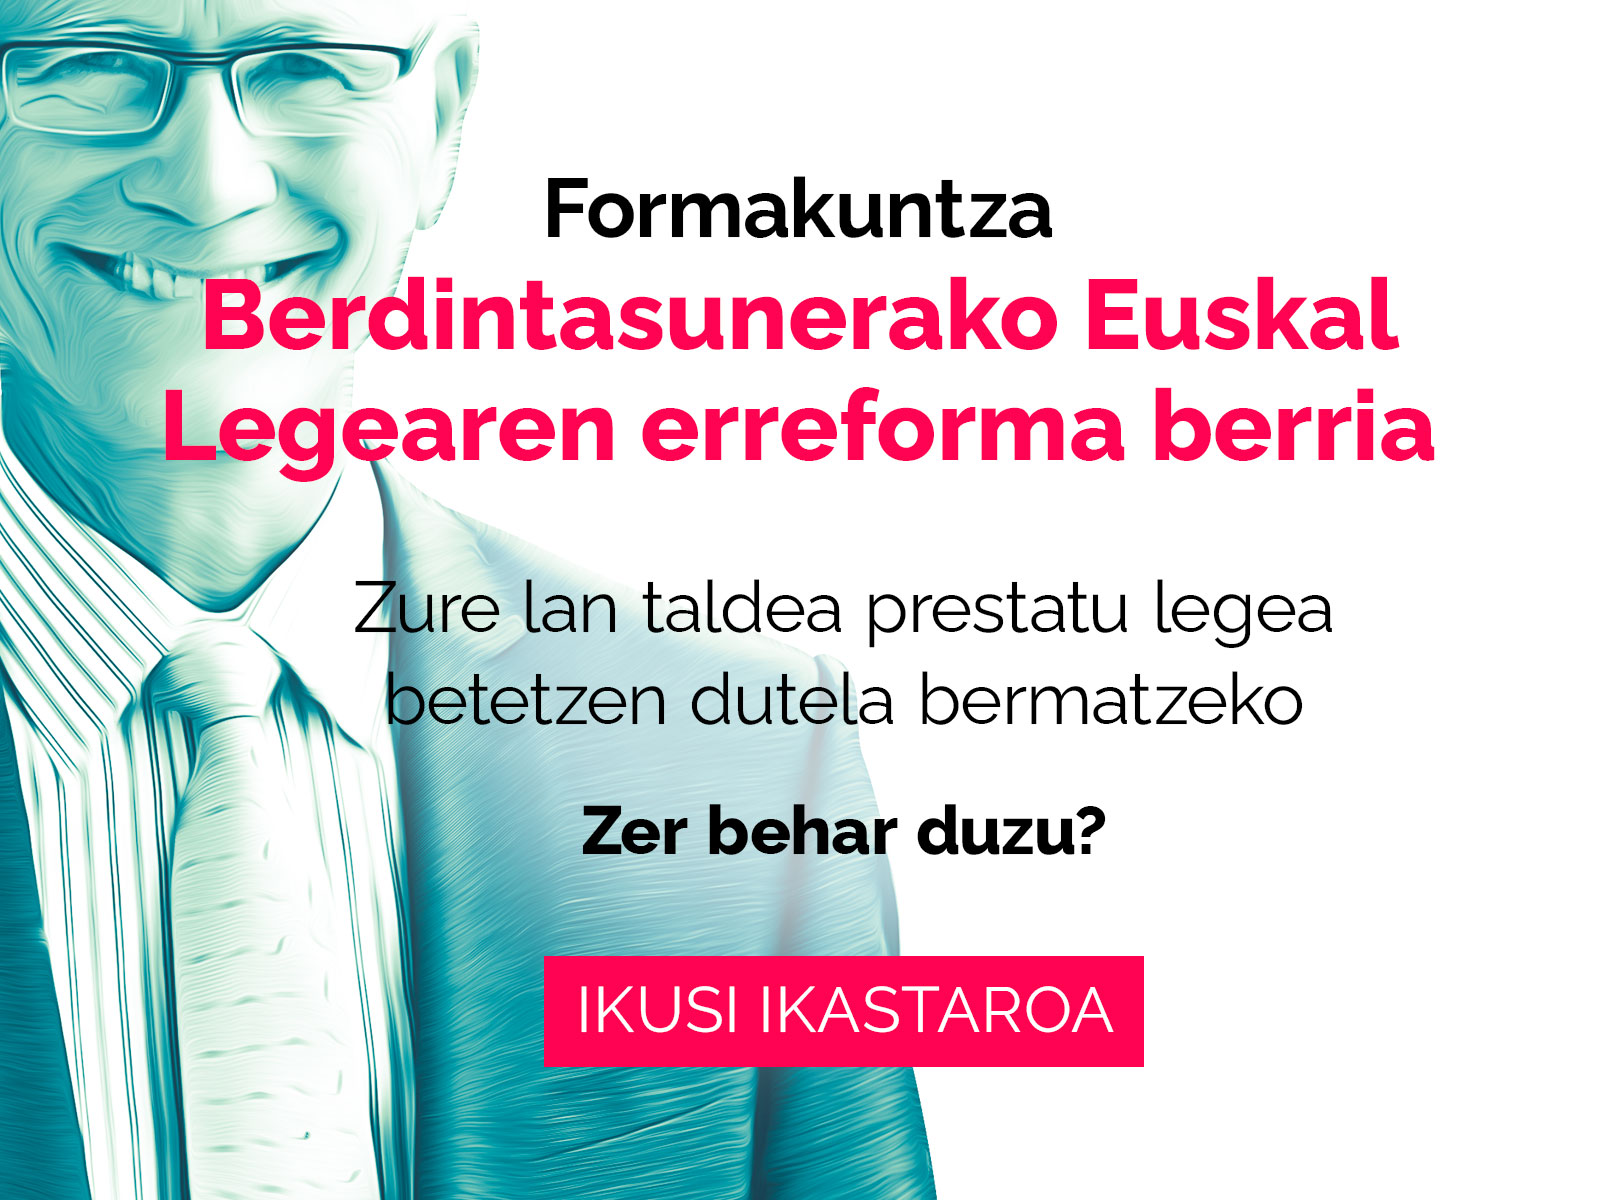 Berdintasunerako Euskal Legearen Erreforma - Formakuntza